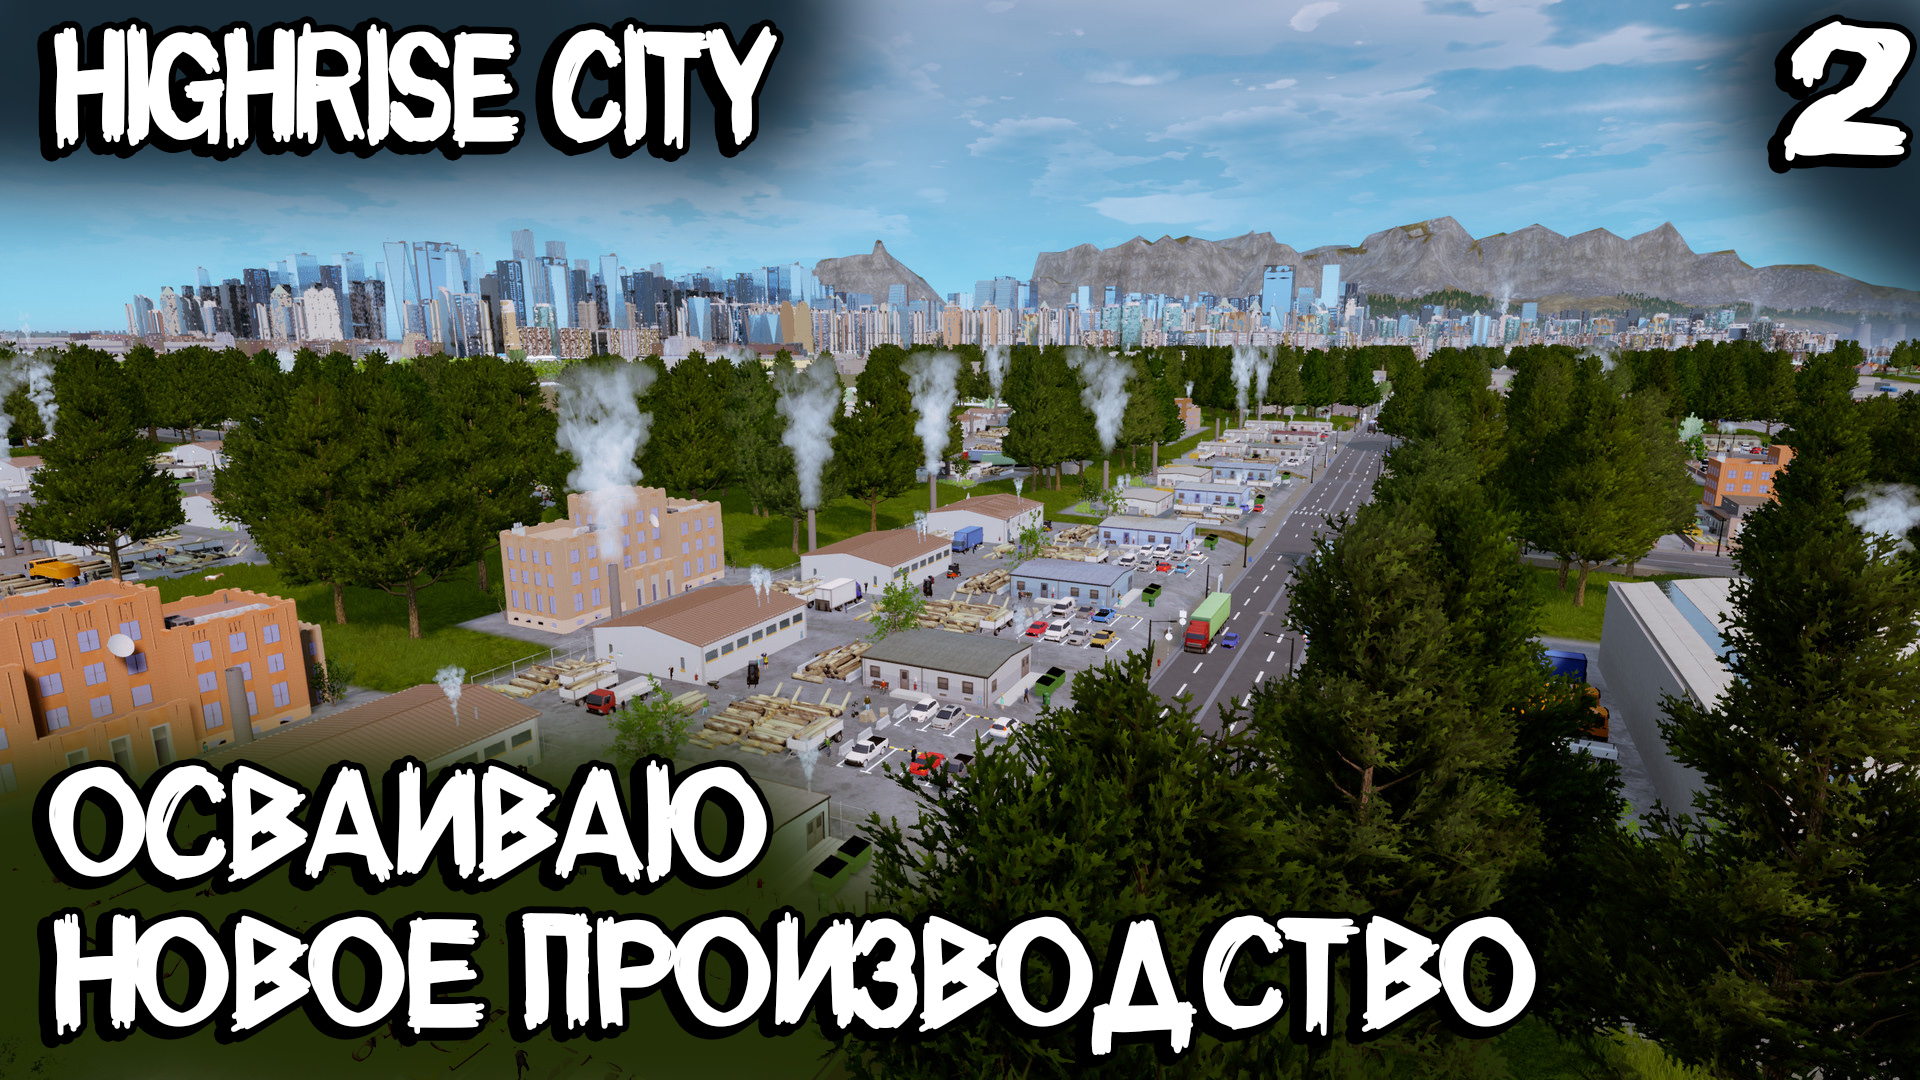 Highrise City – прохождение игры. Добыча металла, создание инструментов и более плотная застройка #2